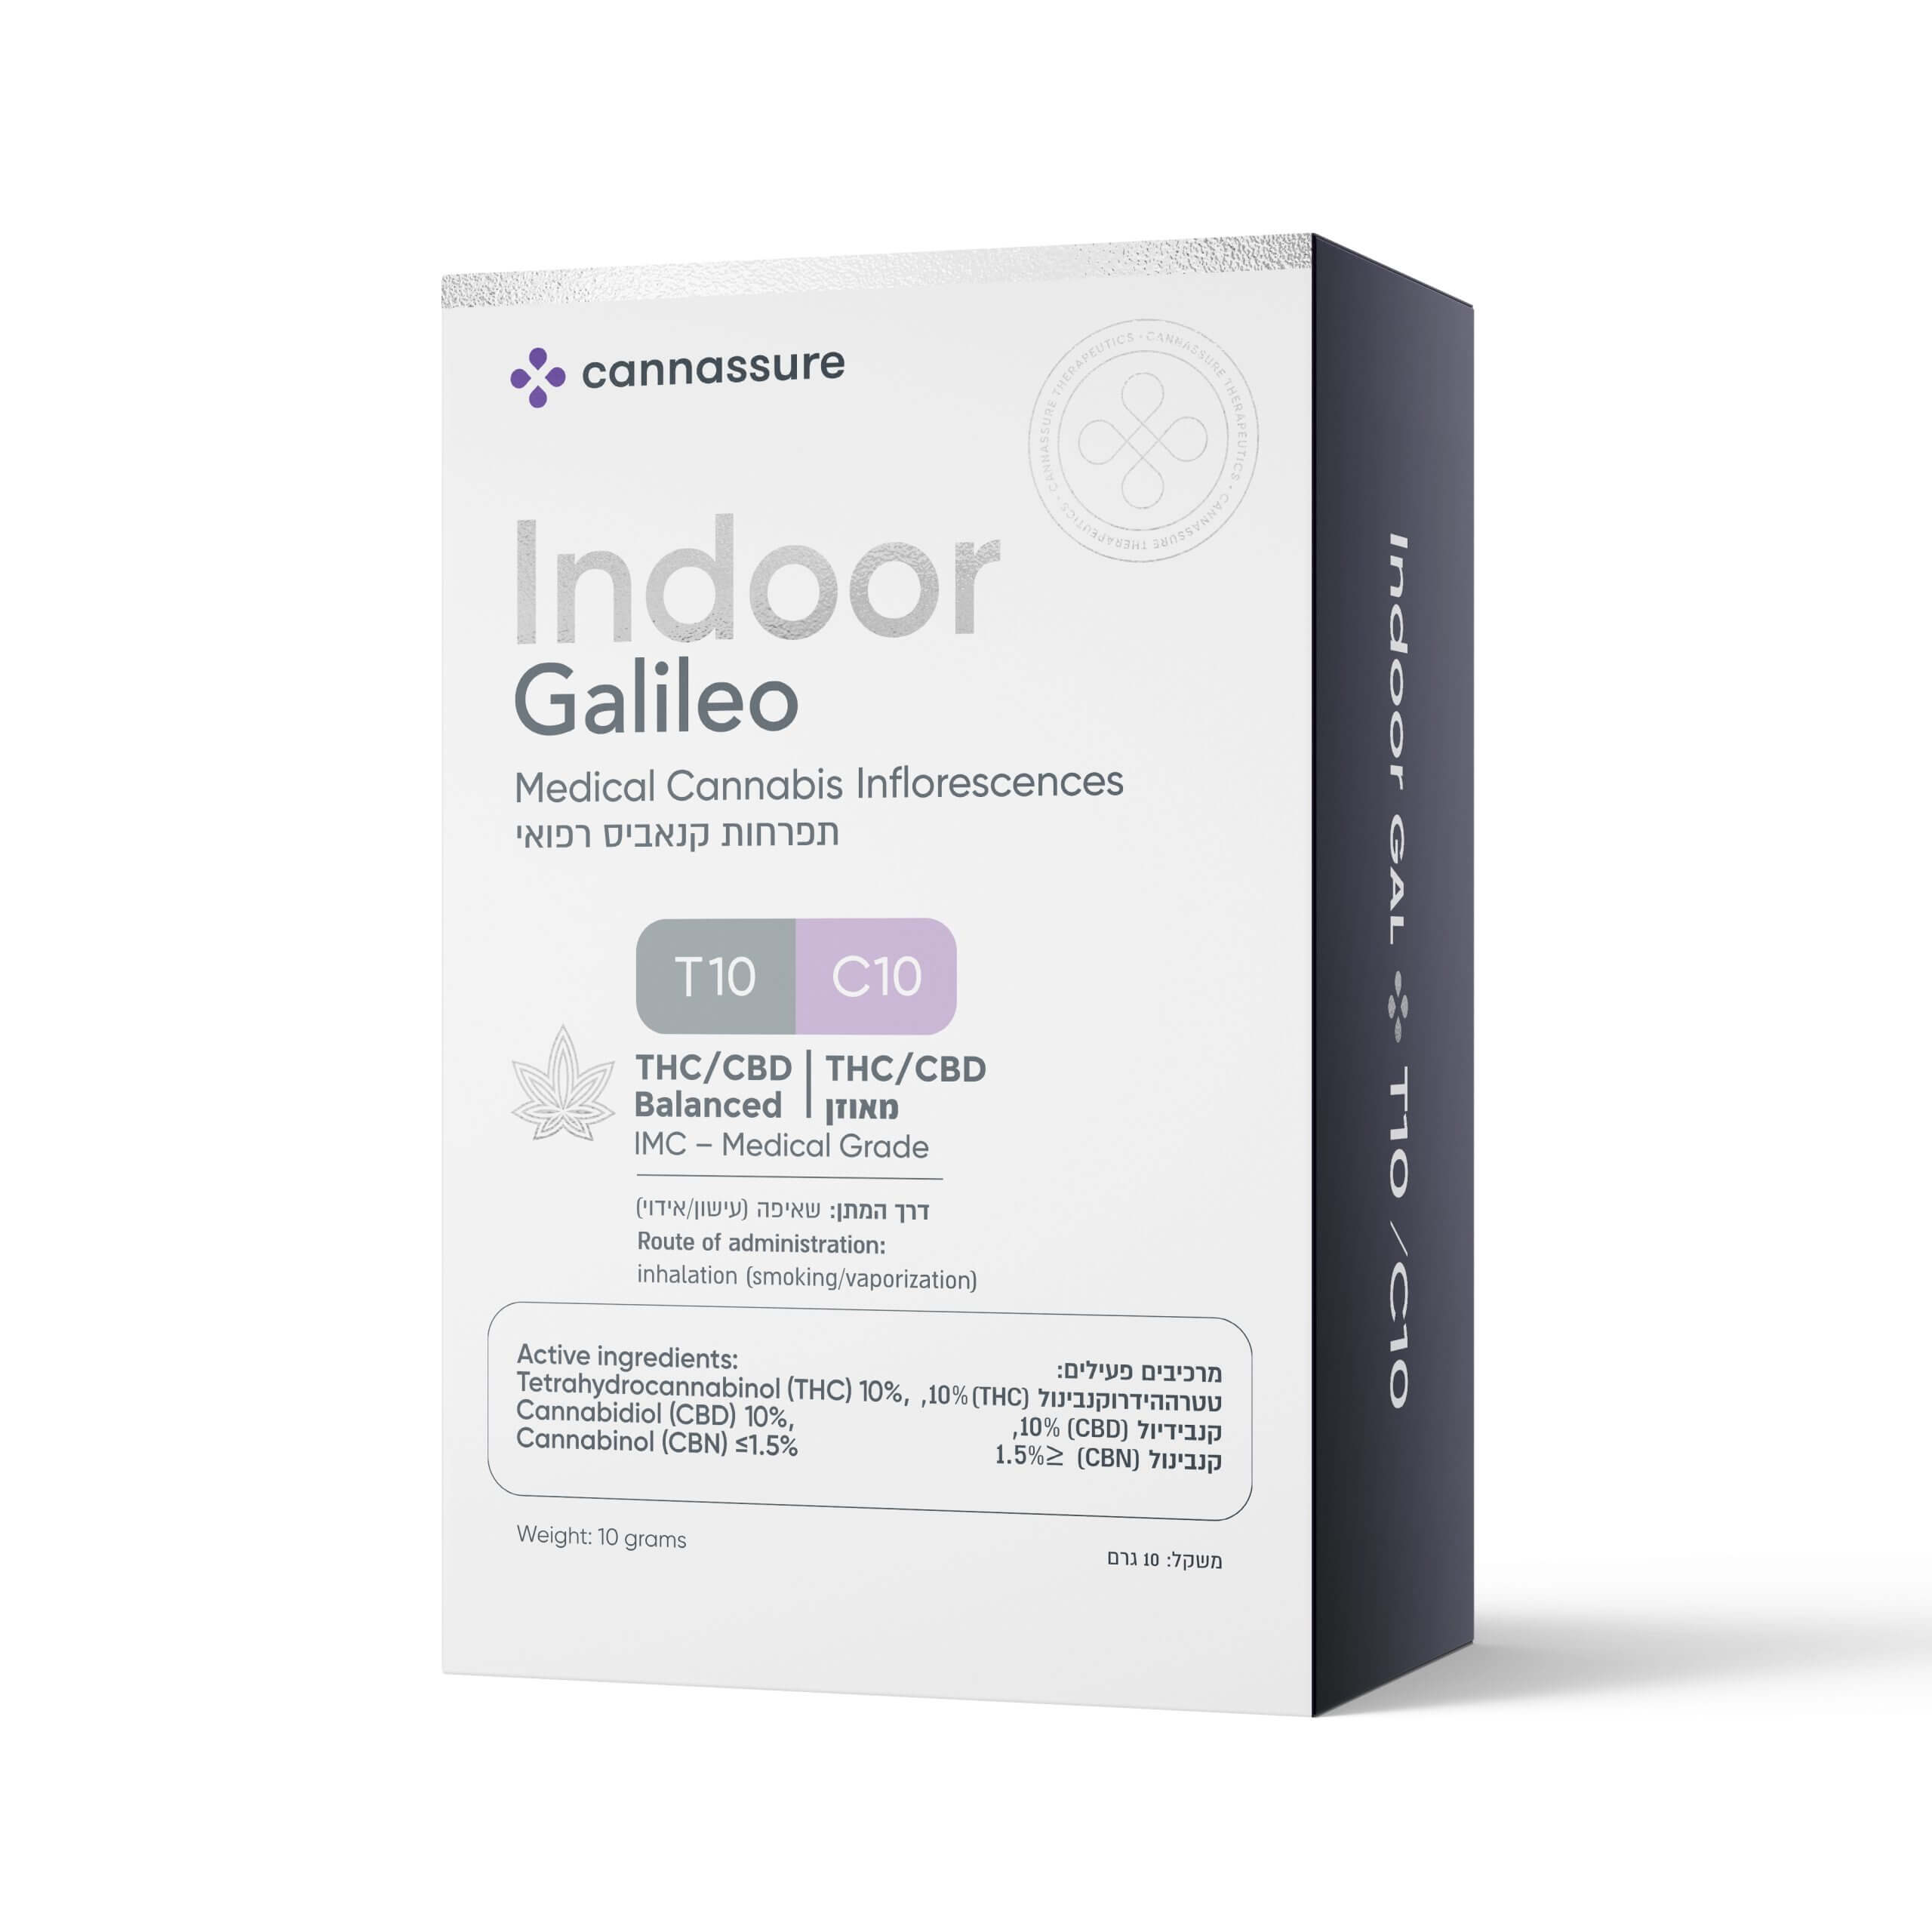 Indoor Galileo